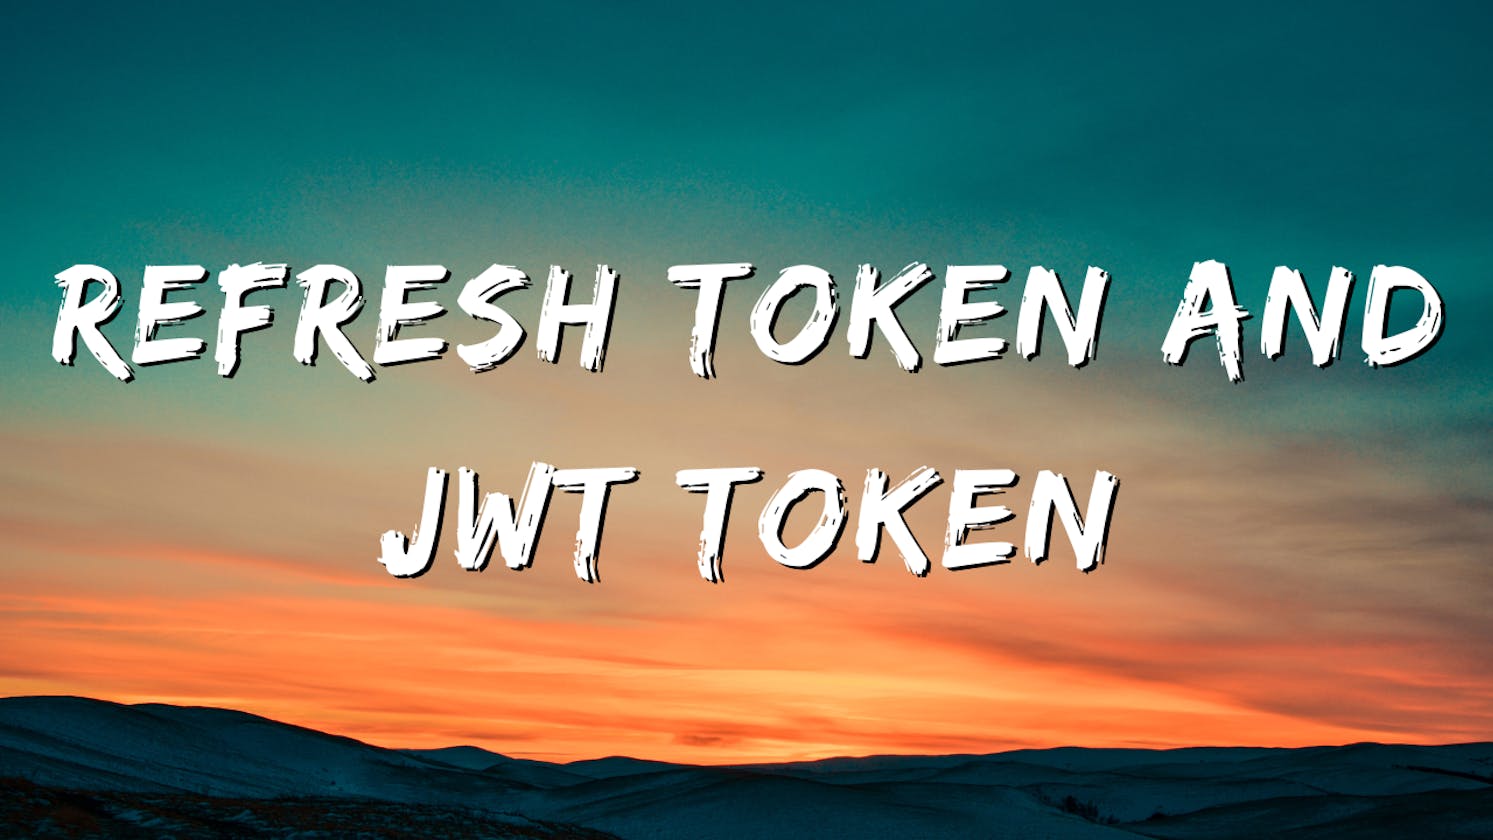 Refresh token and JWT token